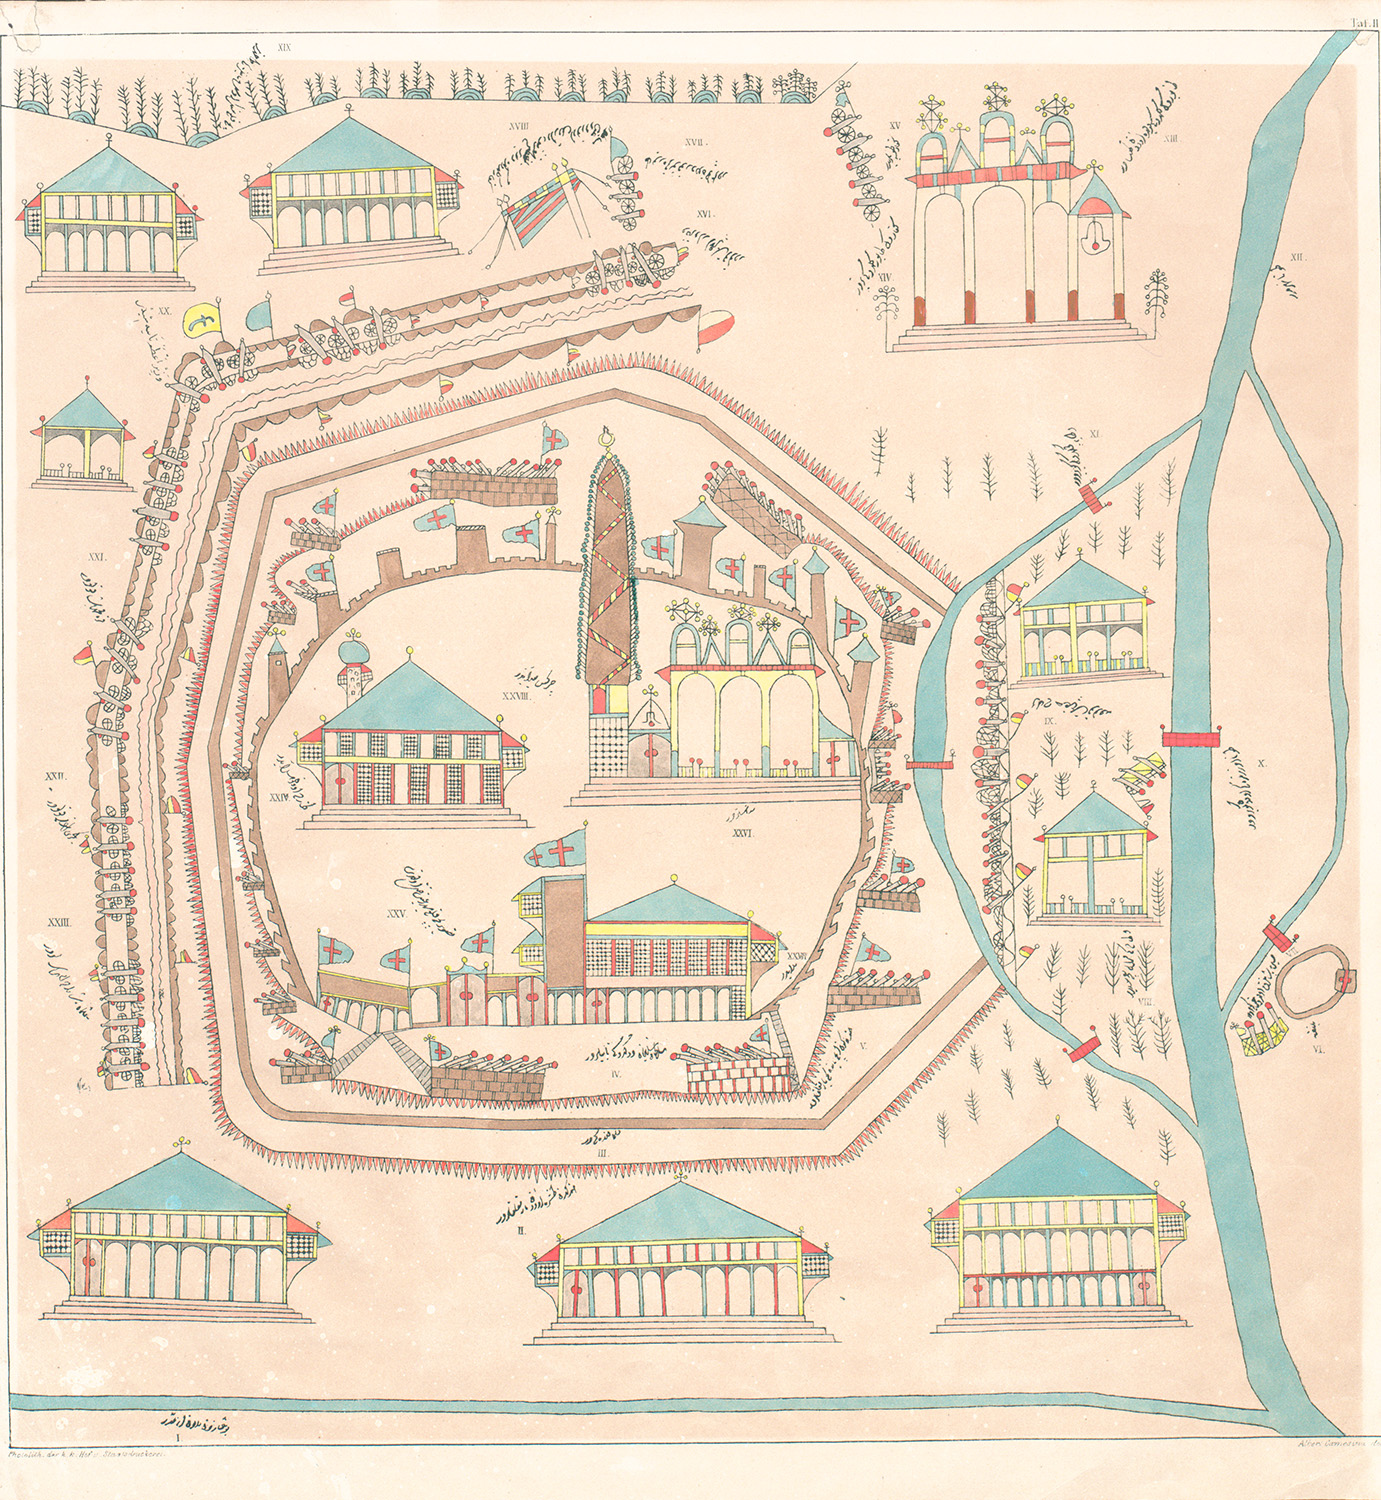 Abbildung der Festung Wien 1683, Verkleinerte Kopie eines im Türkischen Lager angefertigten Planes (mit türkischer Schrift)